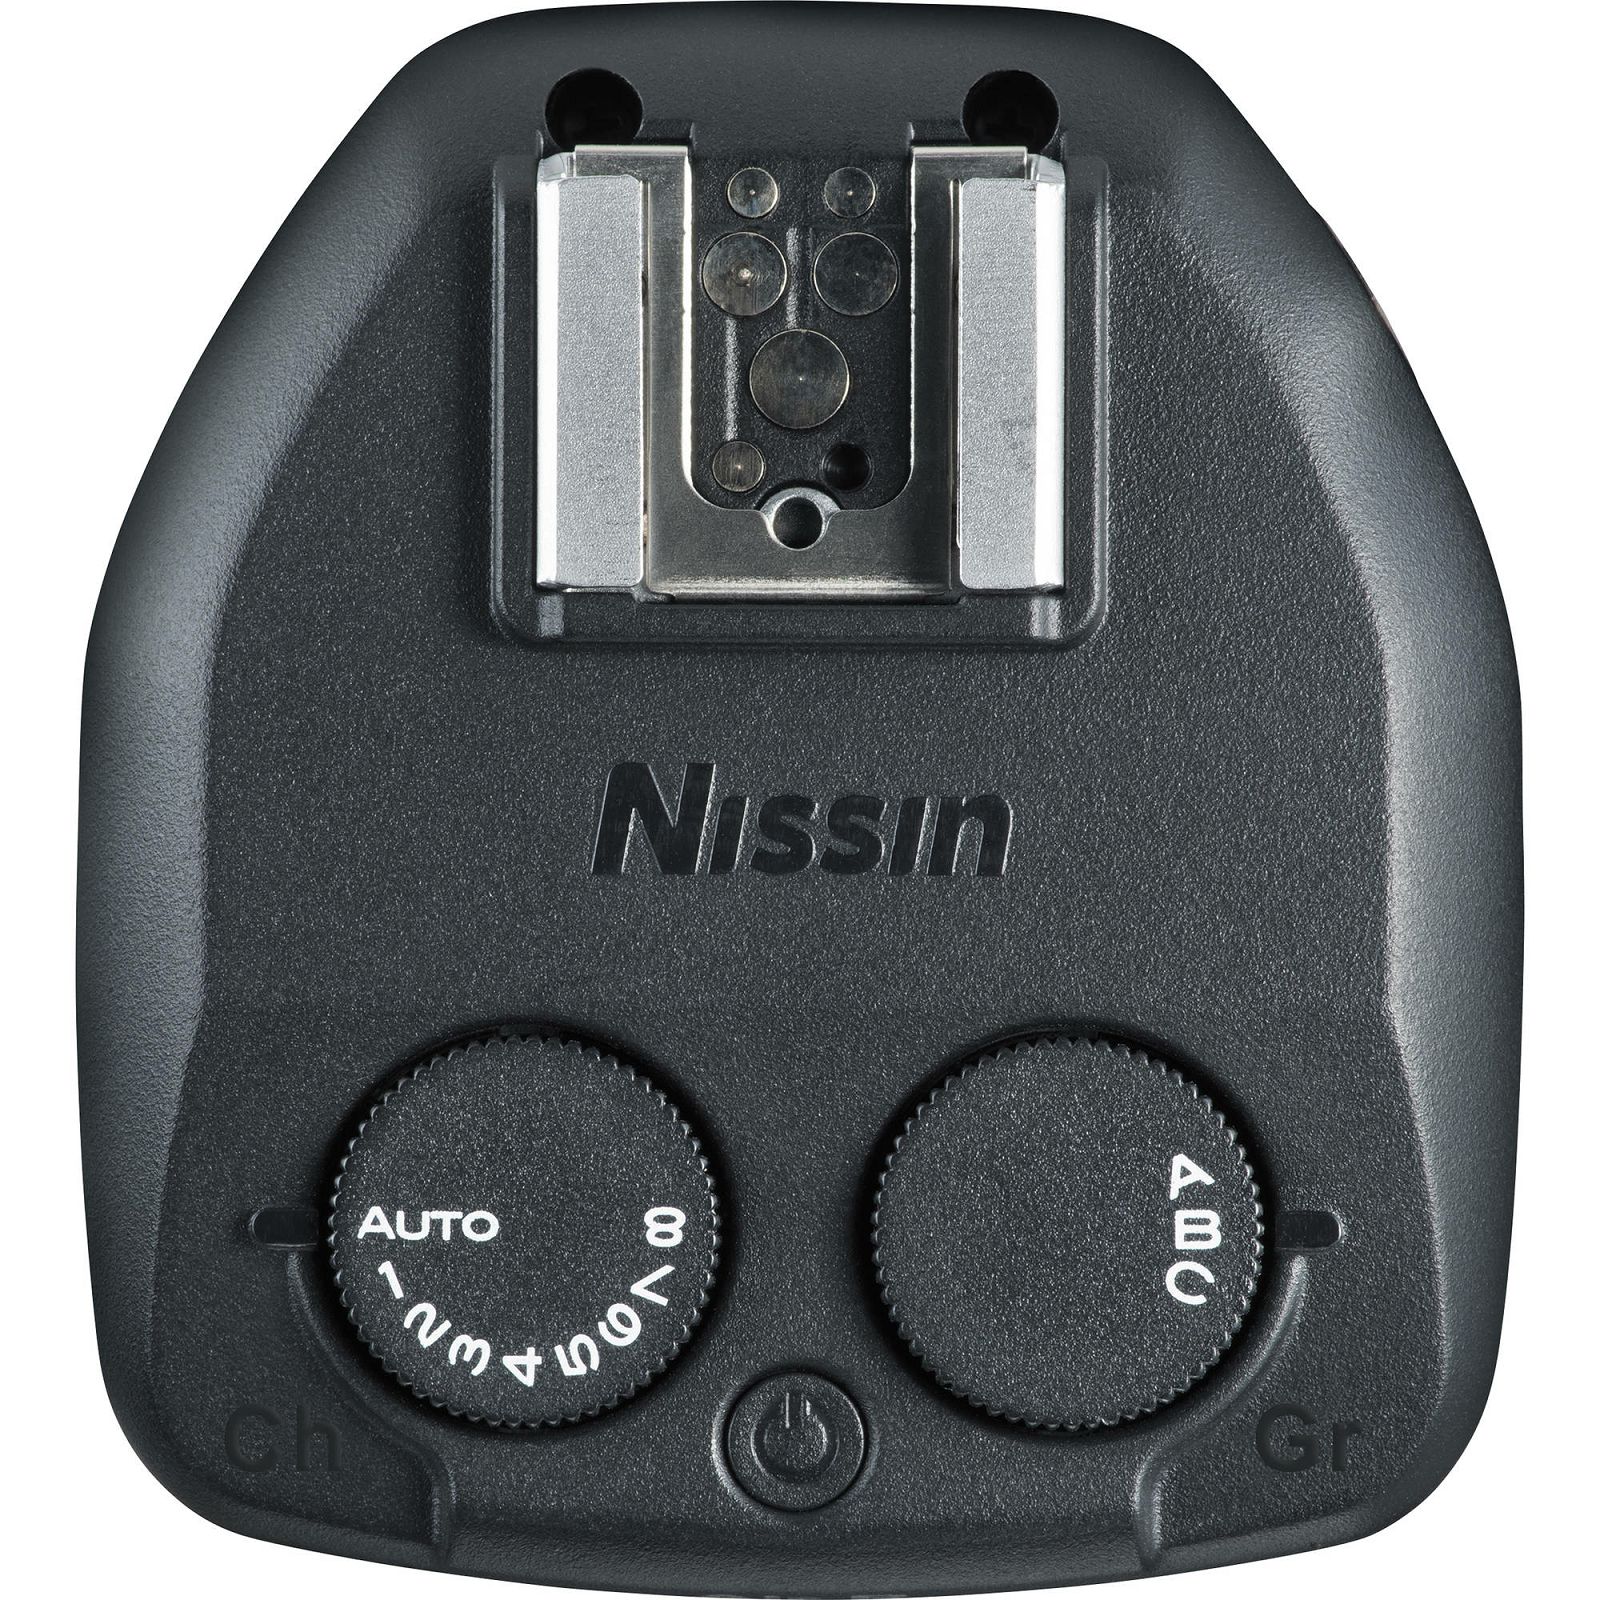 Nissin Receiver Air R TTL HSS bežični prijemnik za Nikon